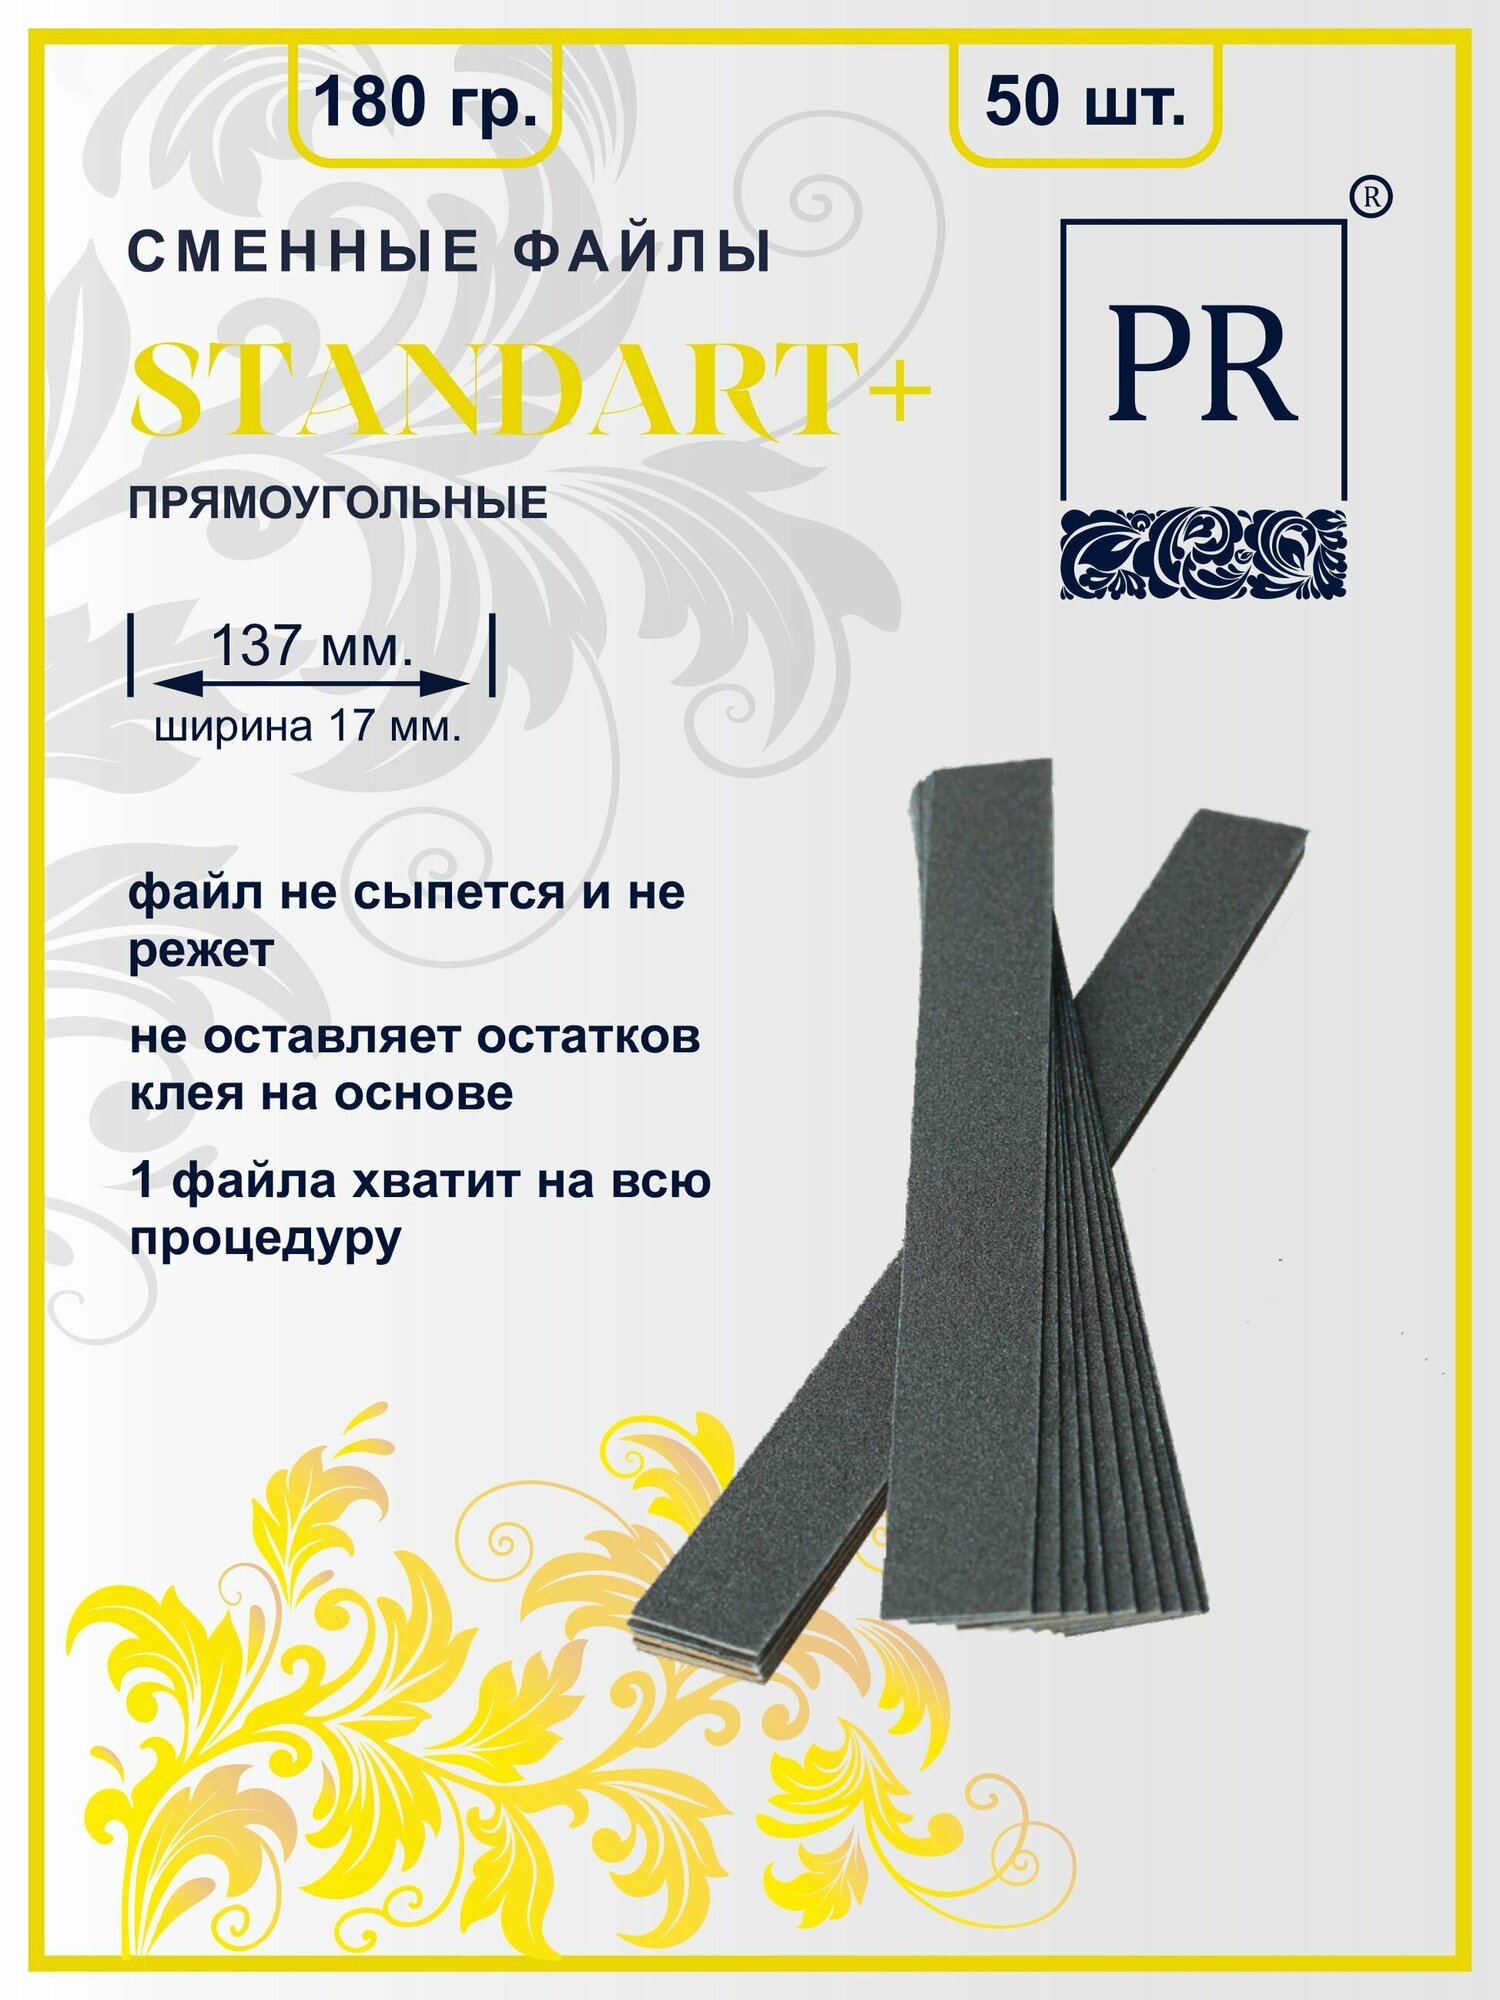 Сменные файлы для пилок Стандарт+ (160х18 мм.) прямоугольные 180 грит упаковка 50 штук